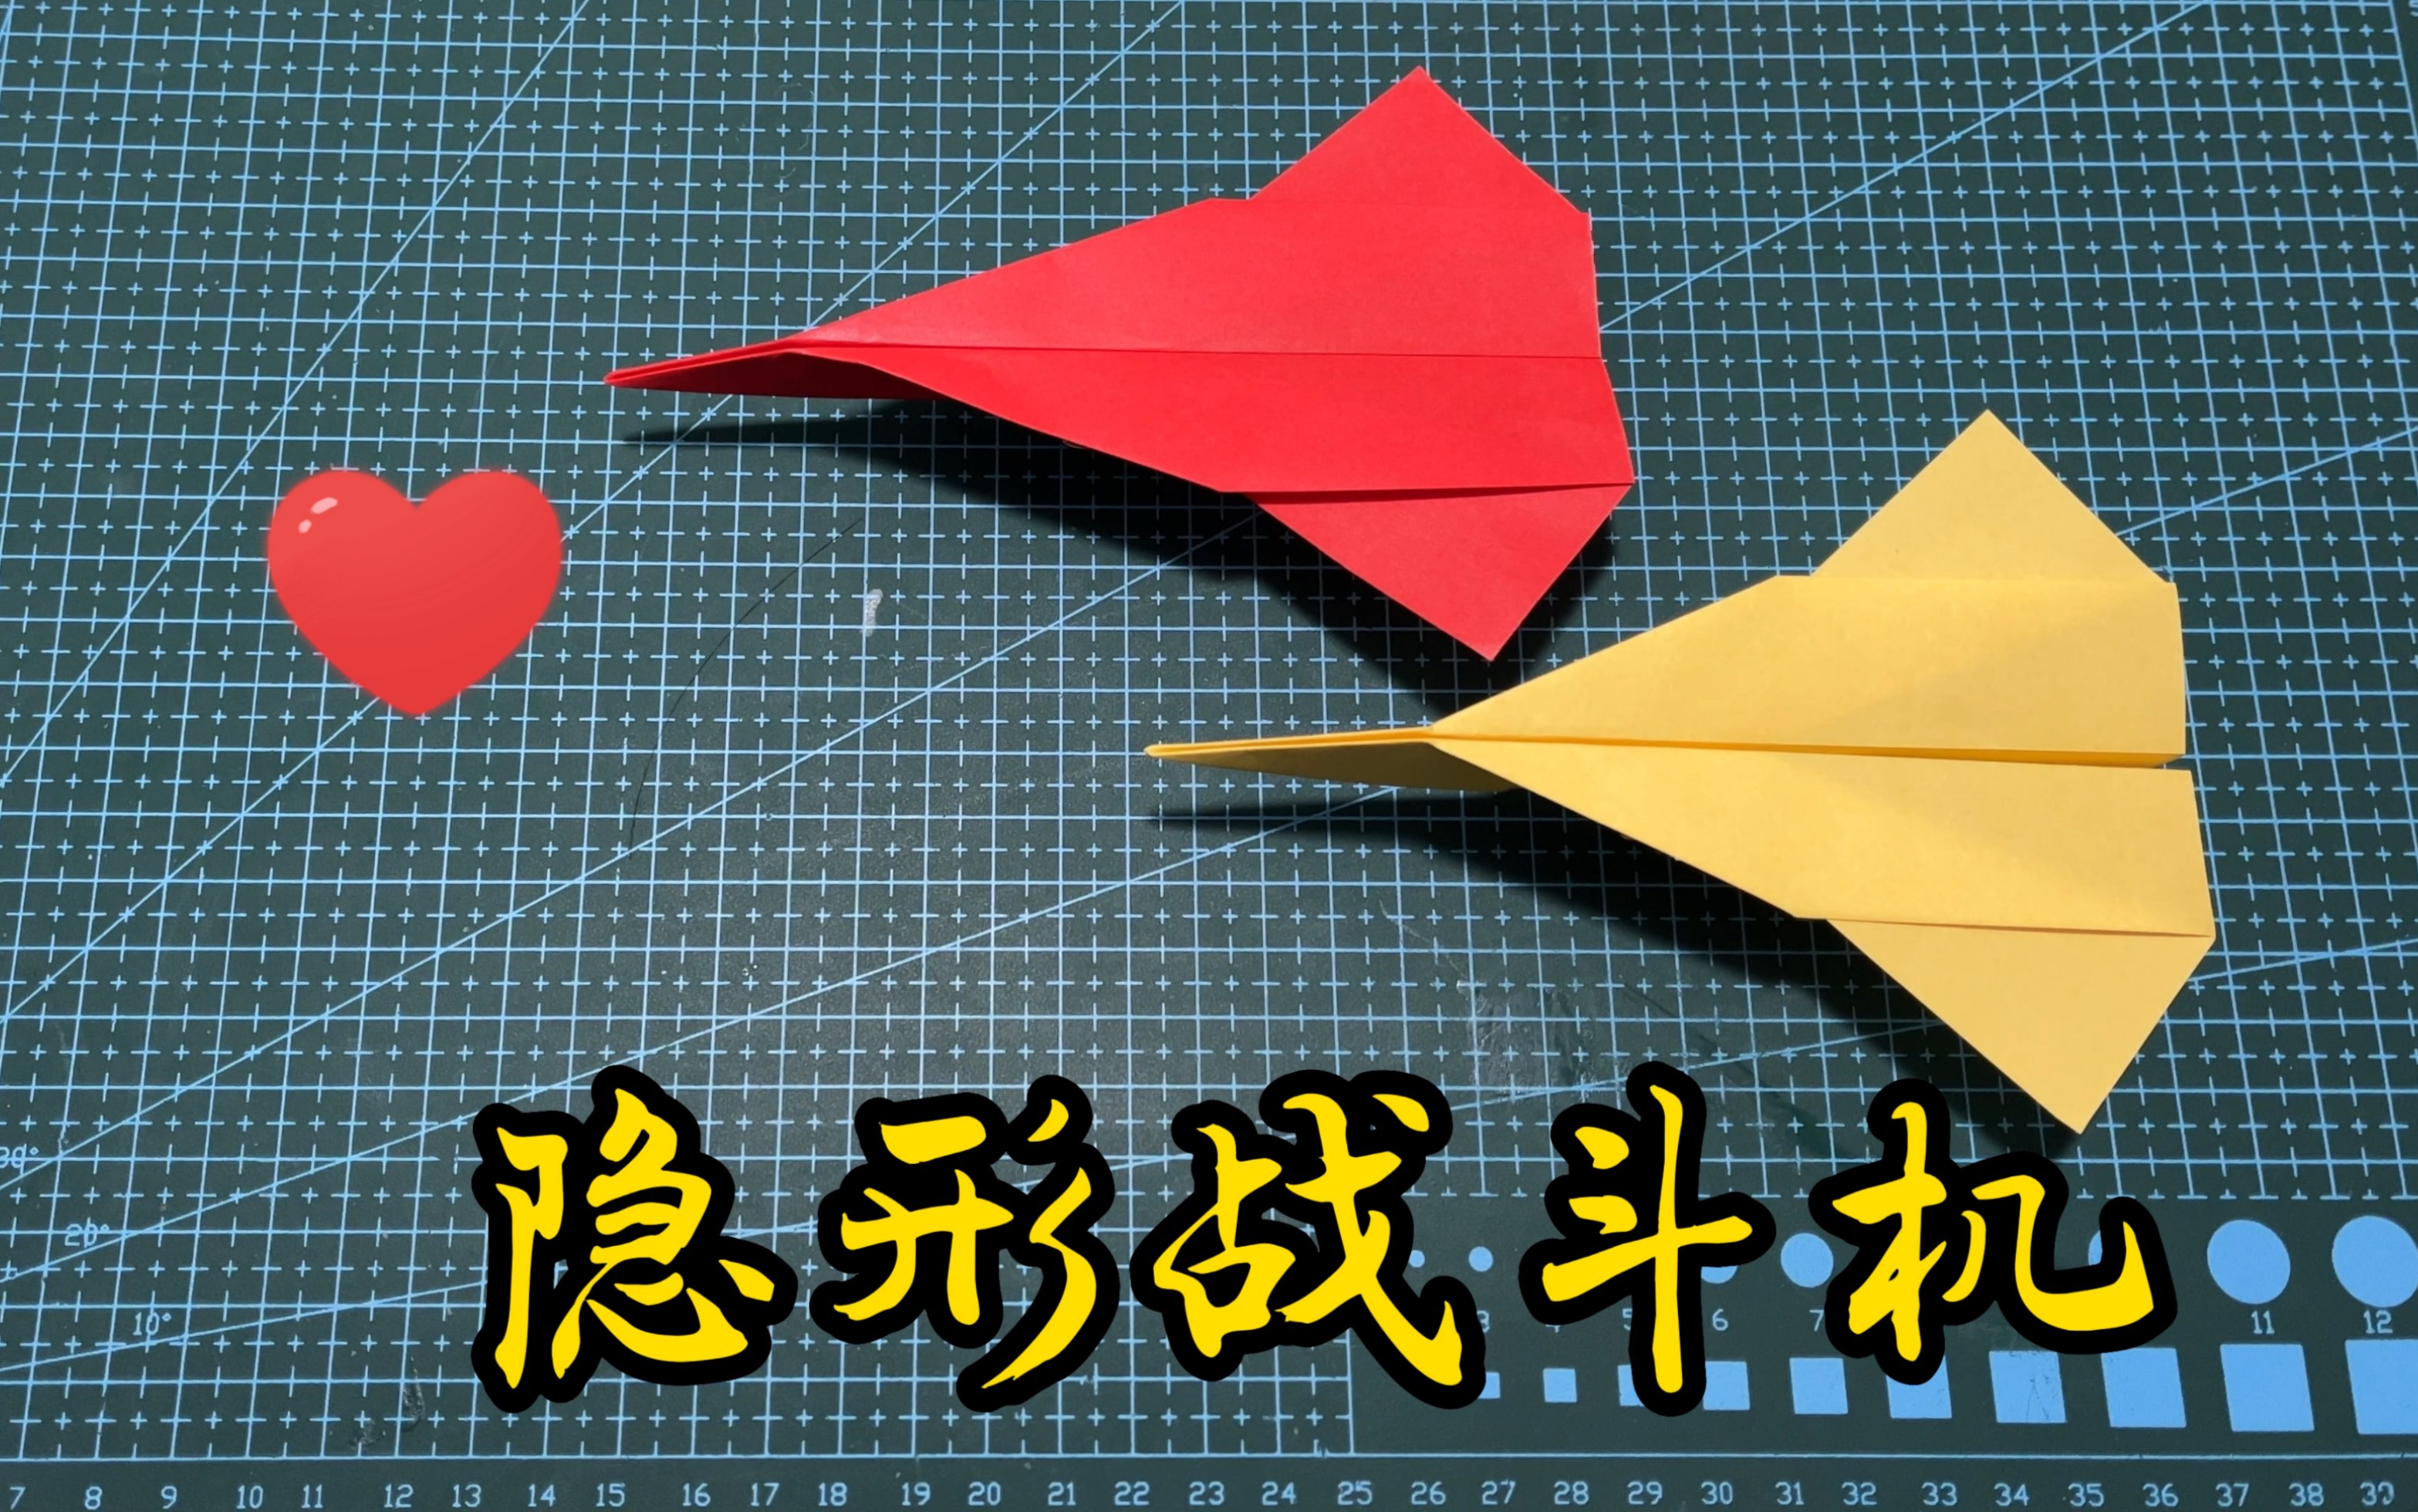 隐形战斗机,飞来飞去,简单动态折纸教程